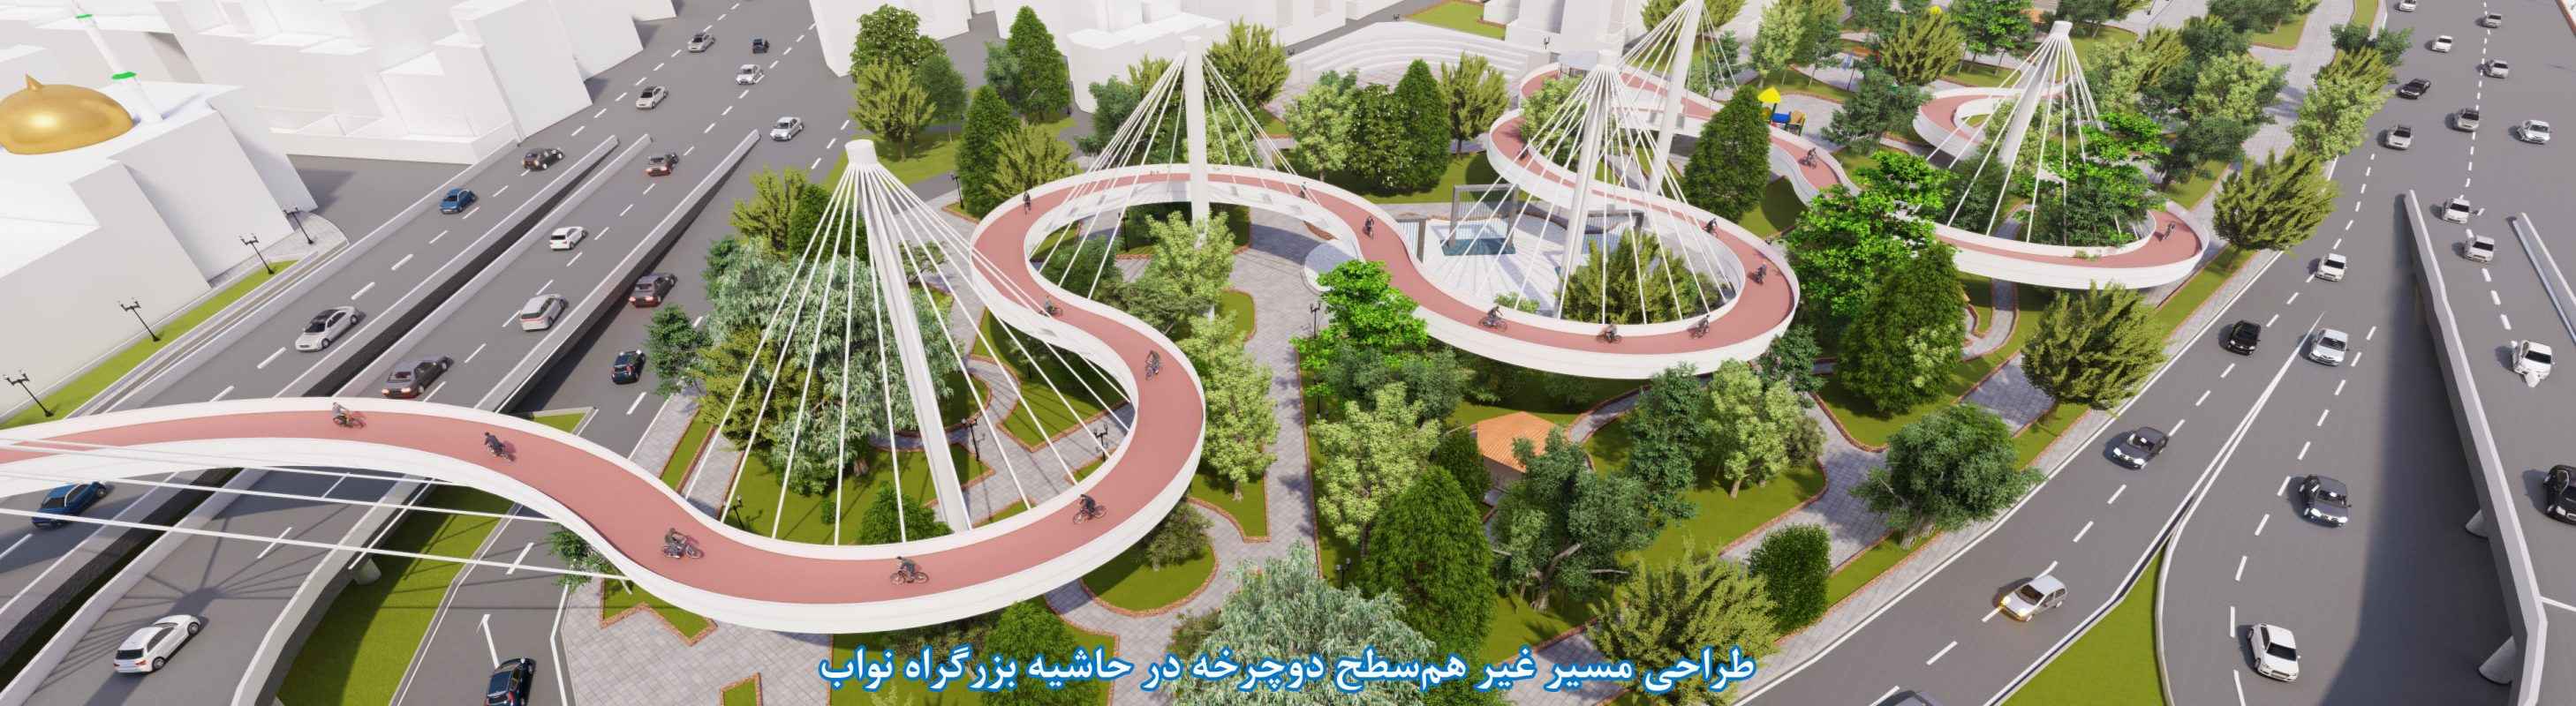 طراحی و ایمن سازی باغ راه سلامت در حاشیه بزرگراه شهید نواب تهران